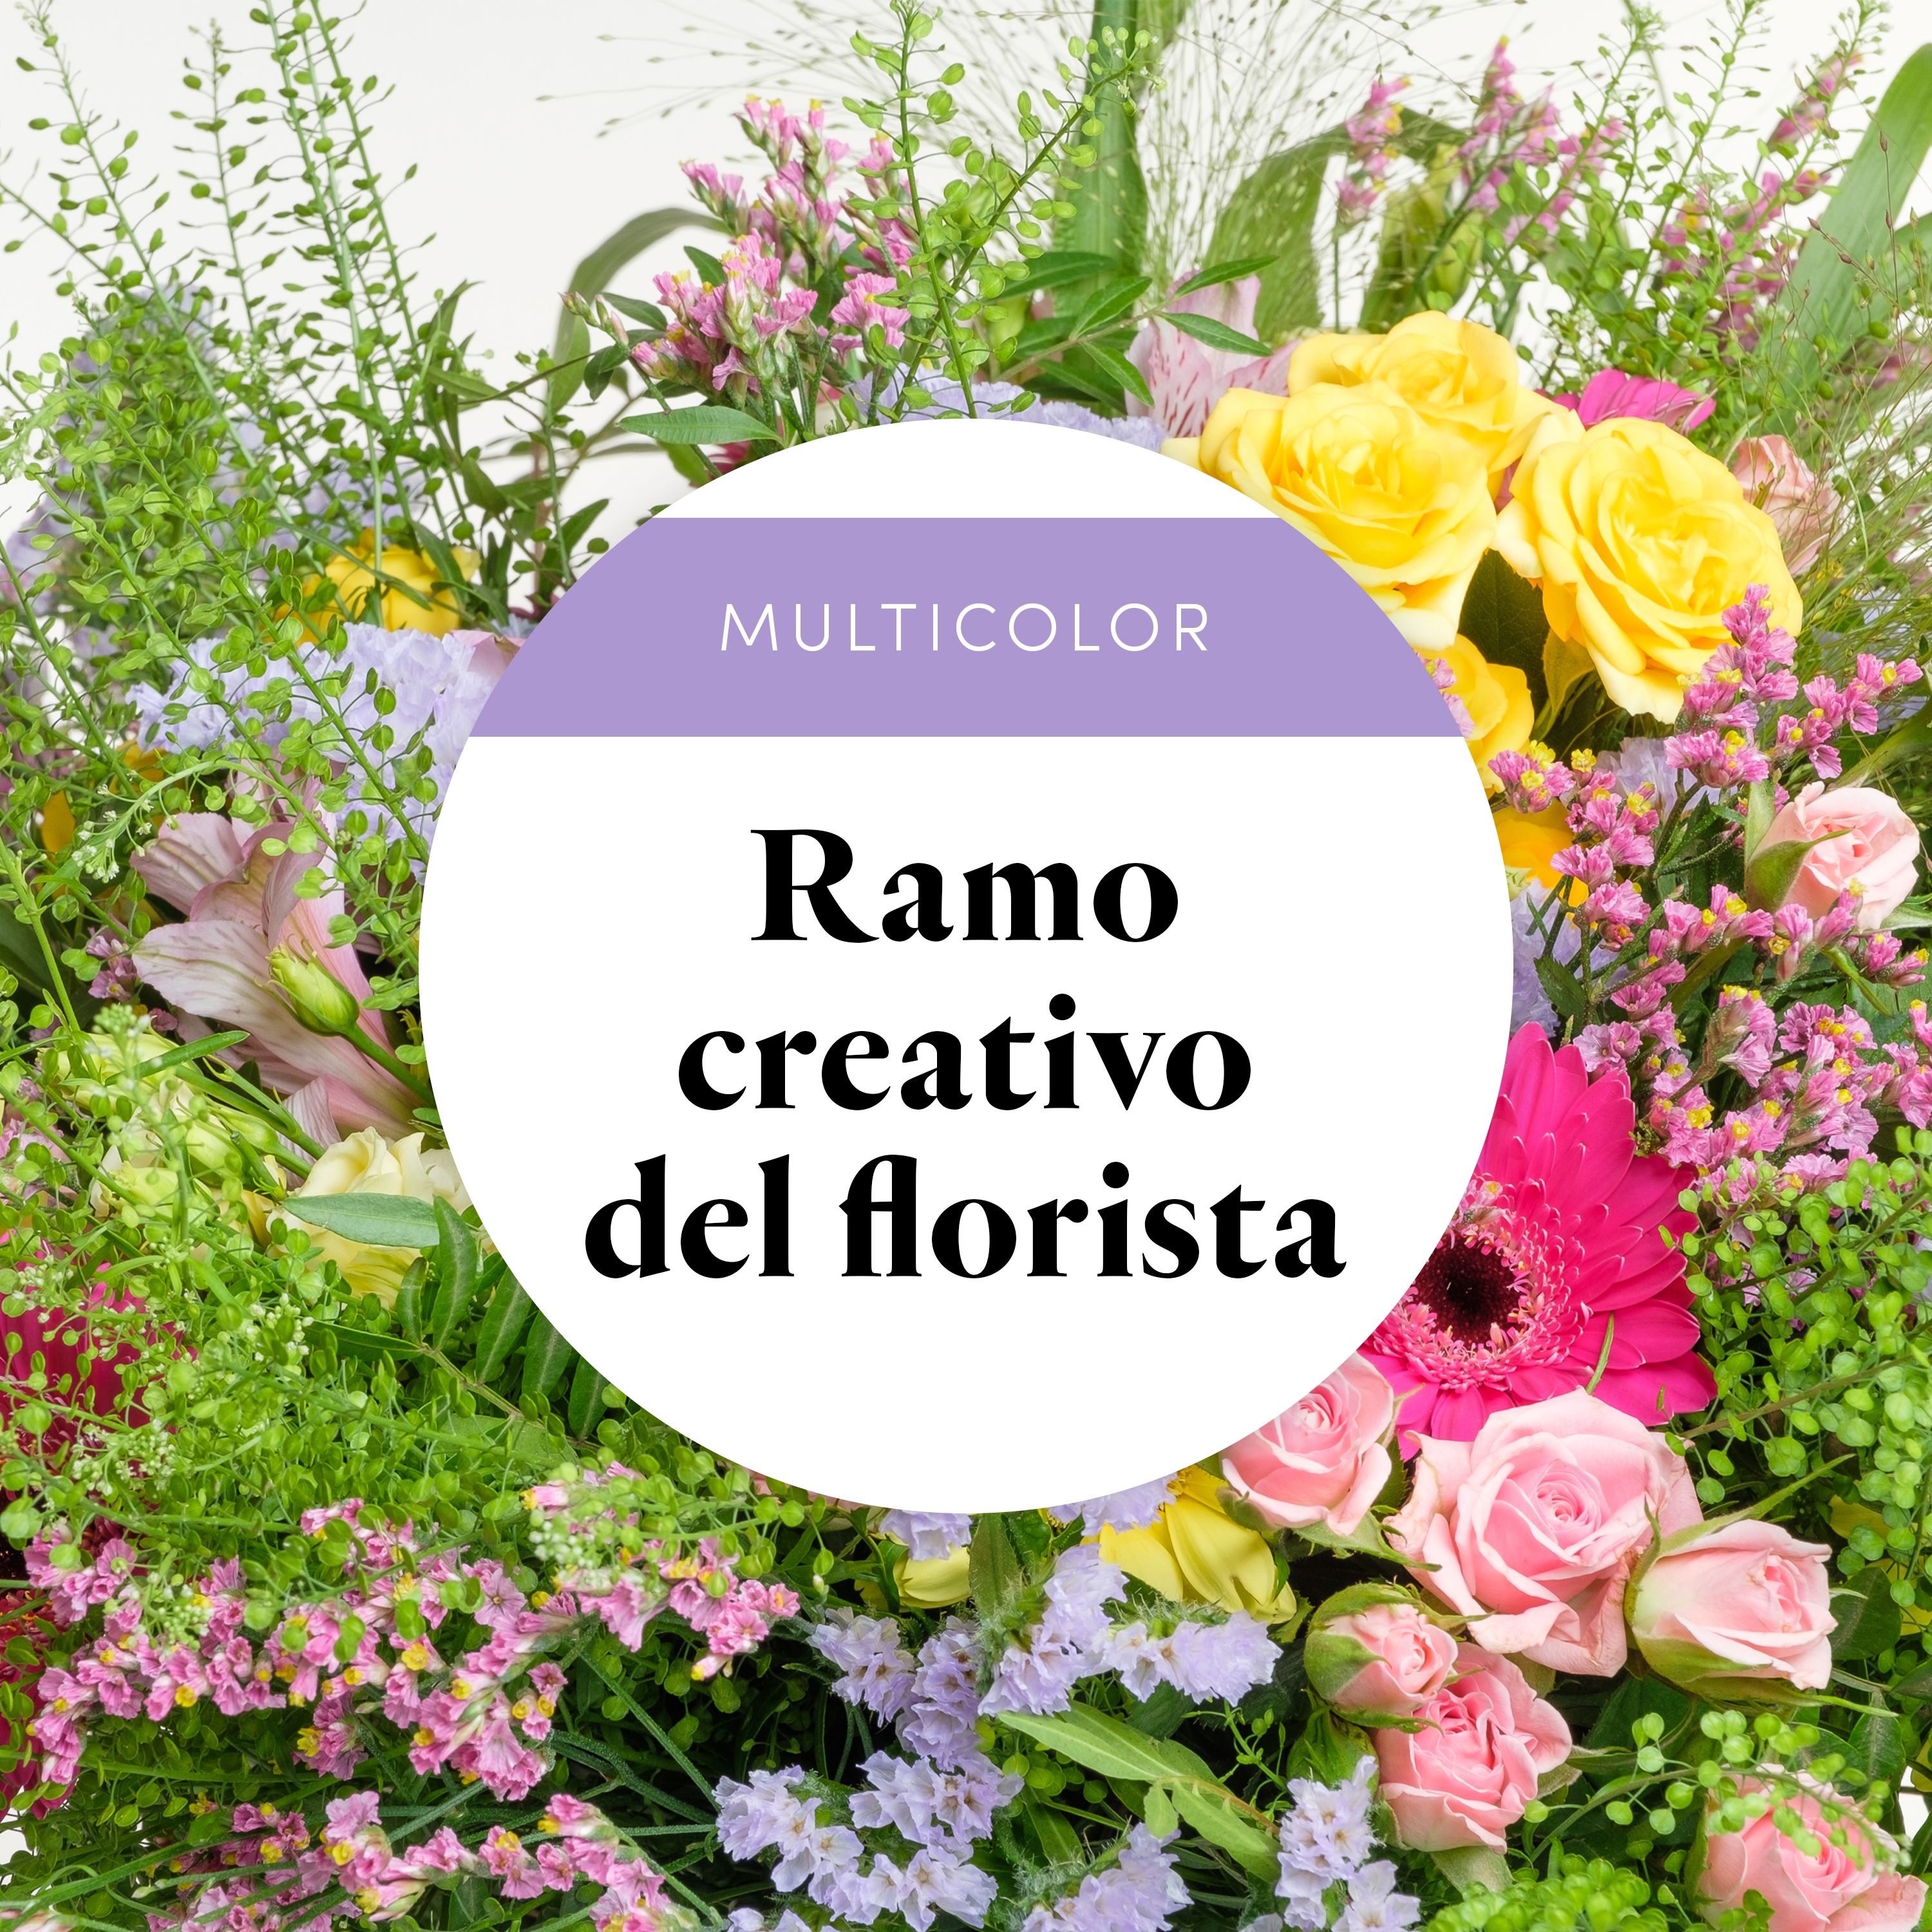 Ramo del Florista: Multicolor